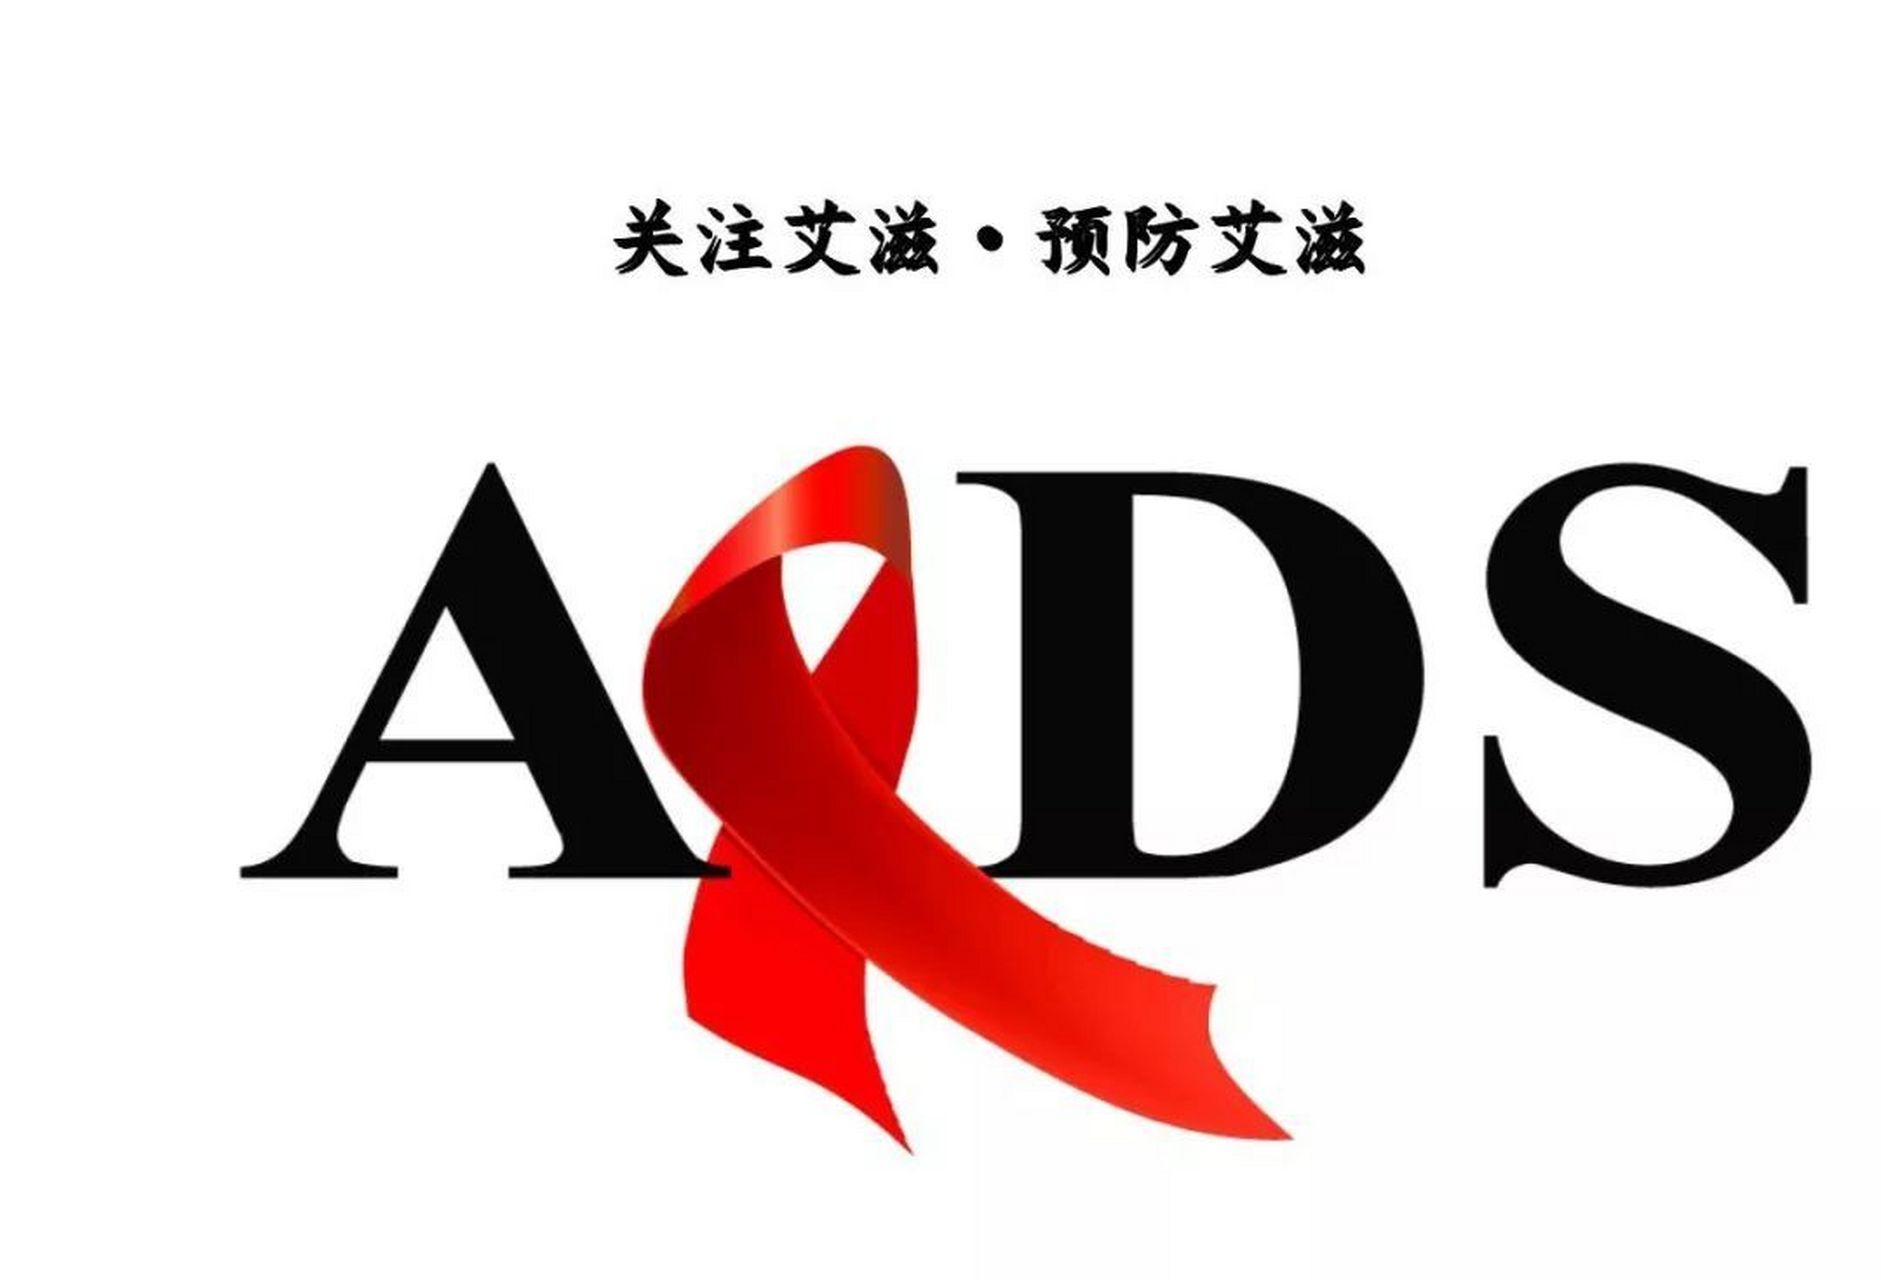 有关艾滋病宣传的图片图片